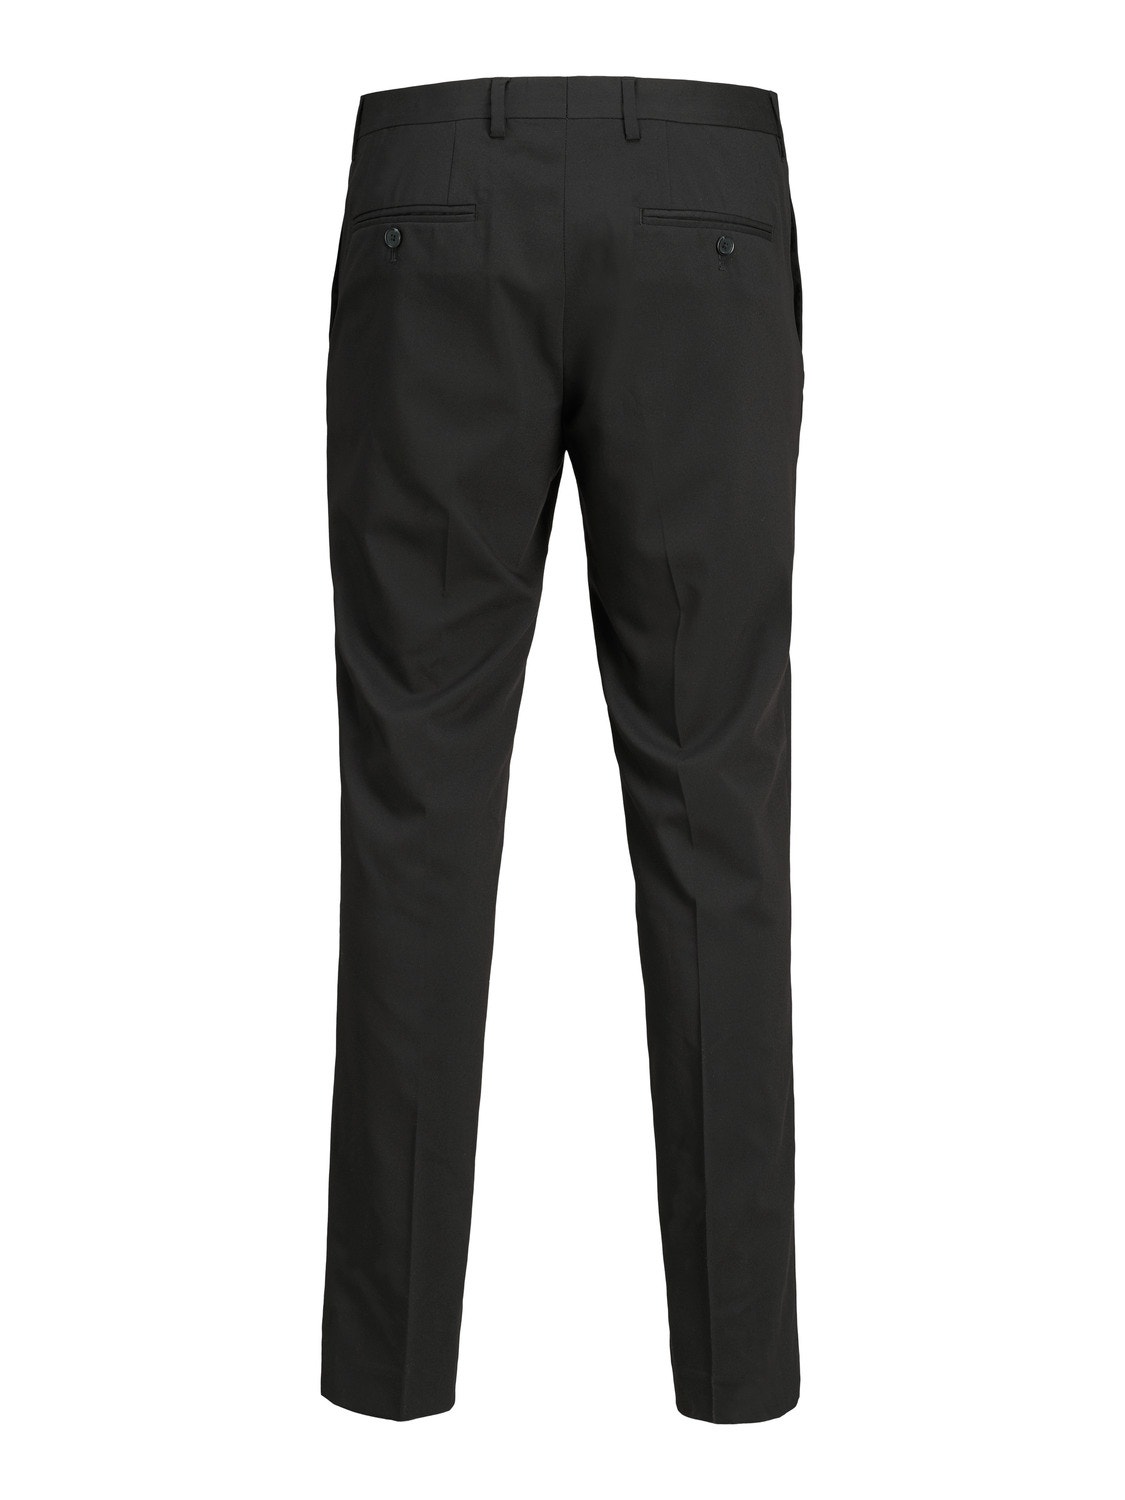 Jack & Jones Plus Size Slim Fit Pantalon -Black - 12202684